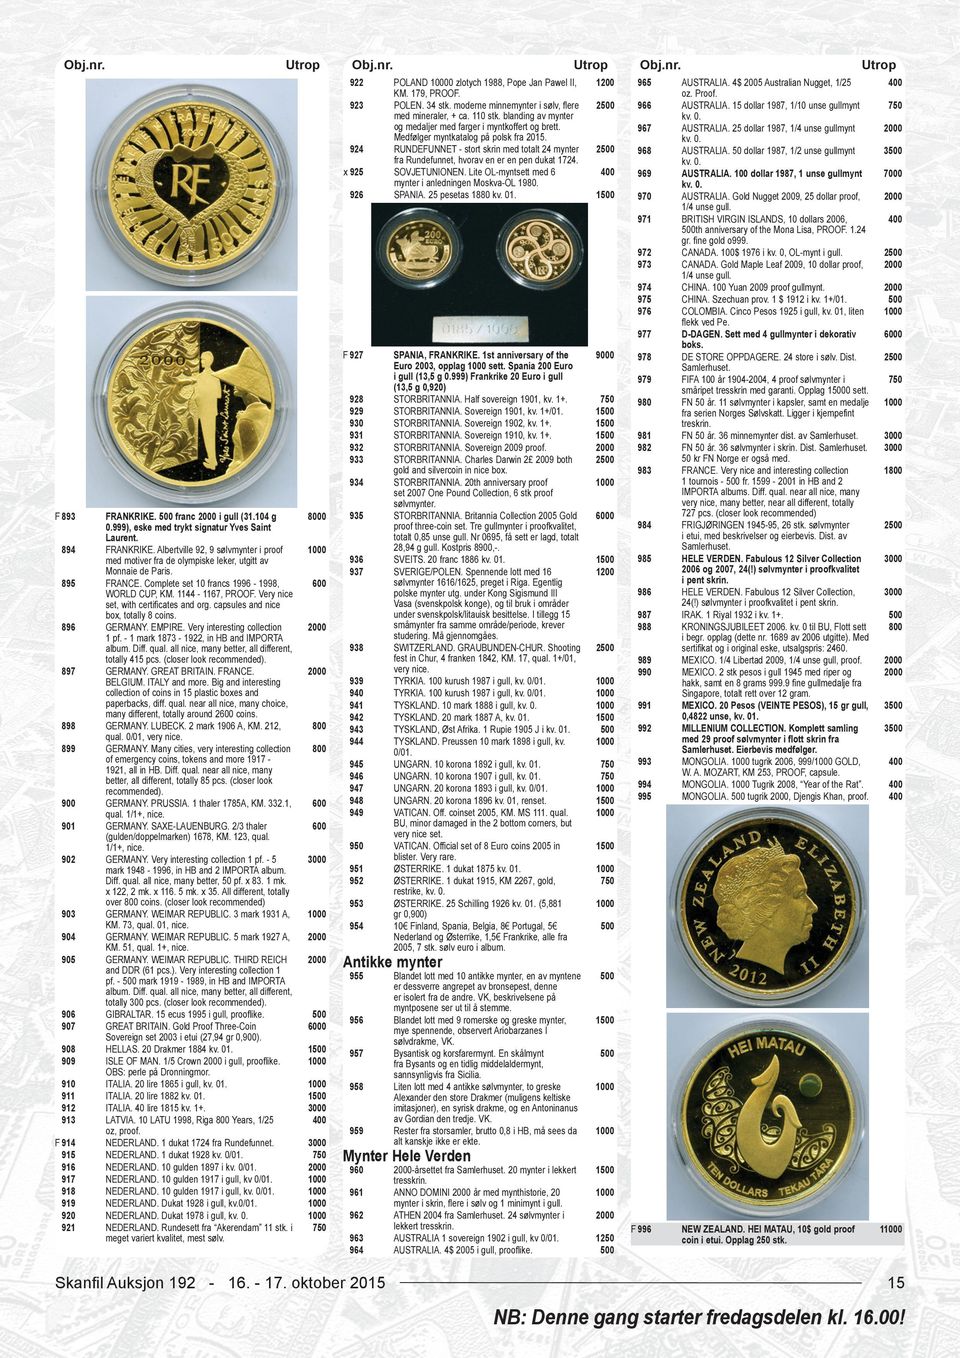 RUNDEFUNNET - stort skrin med totalt 24 mynter fra Rundefunnet, hvorav en er en pen dukat 1724. SOVJETUNIONEN. Lite OL-myntsett med 6 mynter i anledningen Moskva-OL 1980. SPANIA. 25 pesetas 1880 kv.